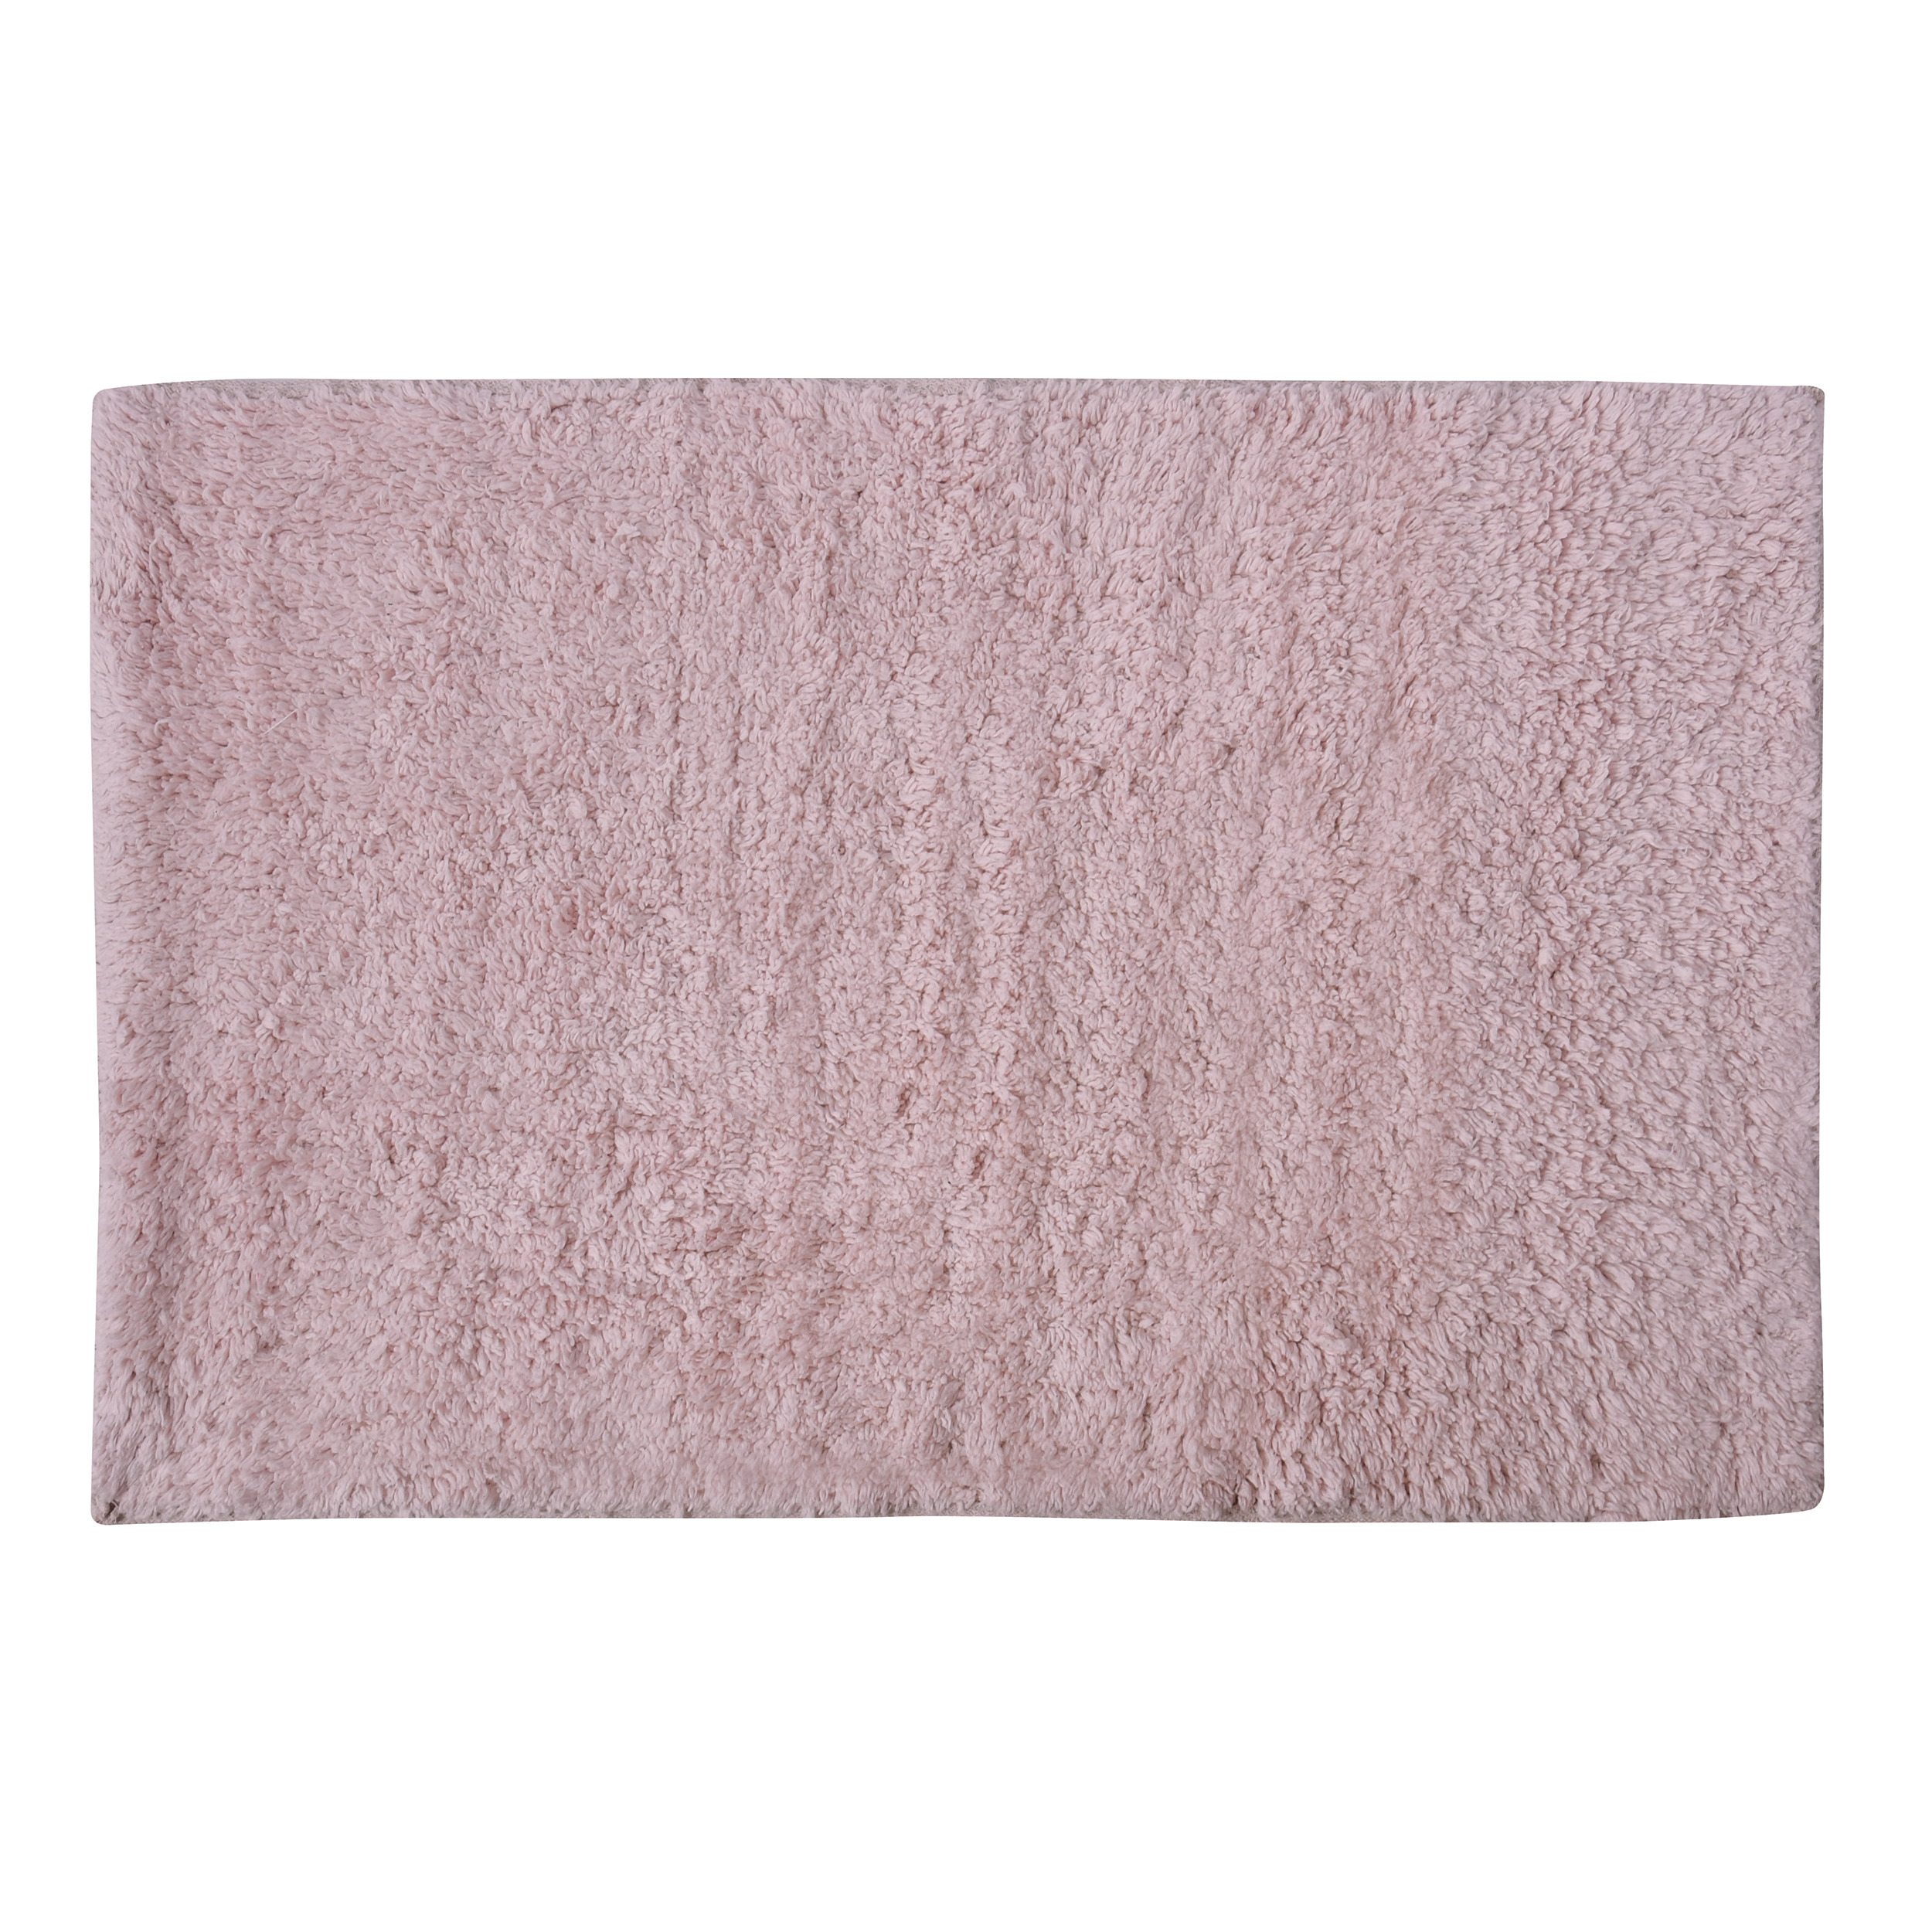 Badkamerkleedje-badmat tapijtje voor op de vloer lichtroze 40 x 60 cm